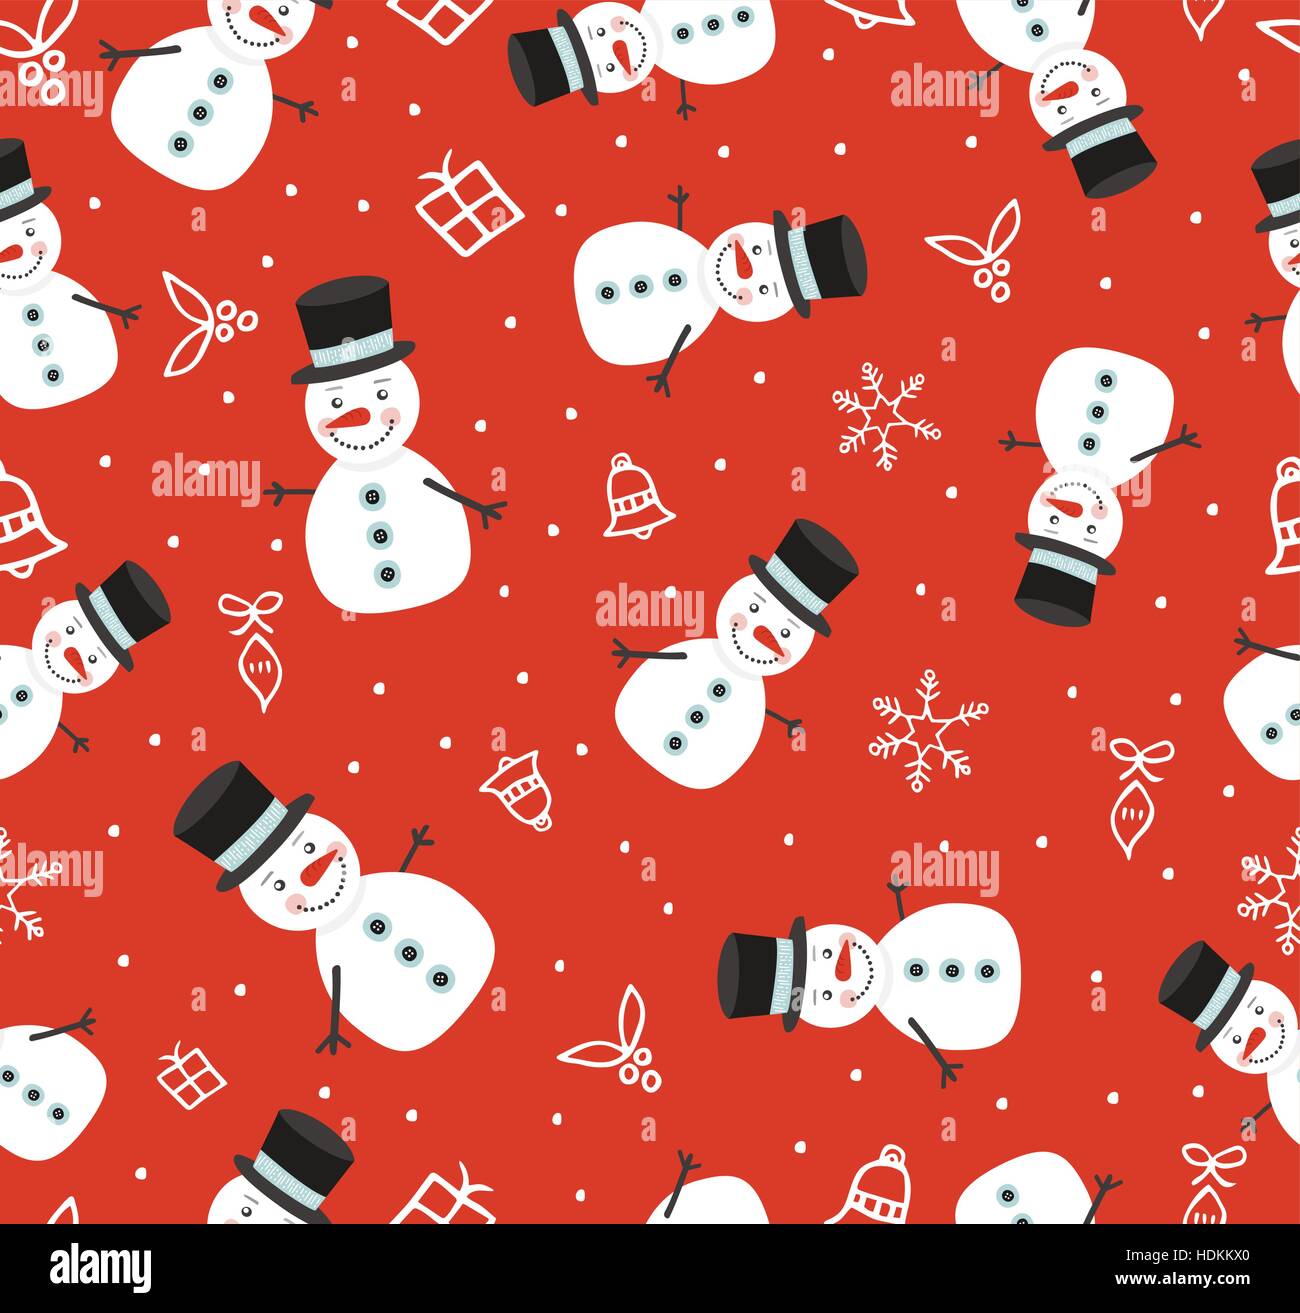 Làm cho màn hình điện thoại của bạn trở nên đầy chất hài hước và vui nhộn với những hình nền phông nền Giáng sinh vui nhộn với người tuyết đáng yêu này! Những hình ảnh tuyệt vời sẽ khiến bạn cảm thấy vui tươi và hạnh phúc hơn bao giờ hết!